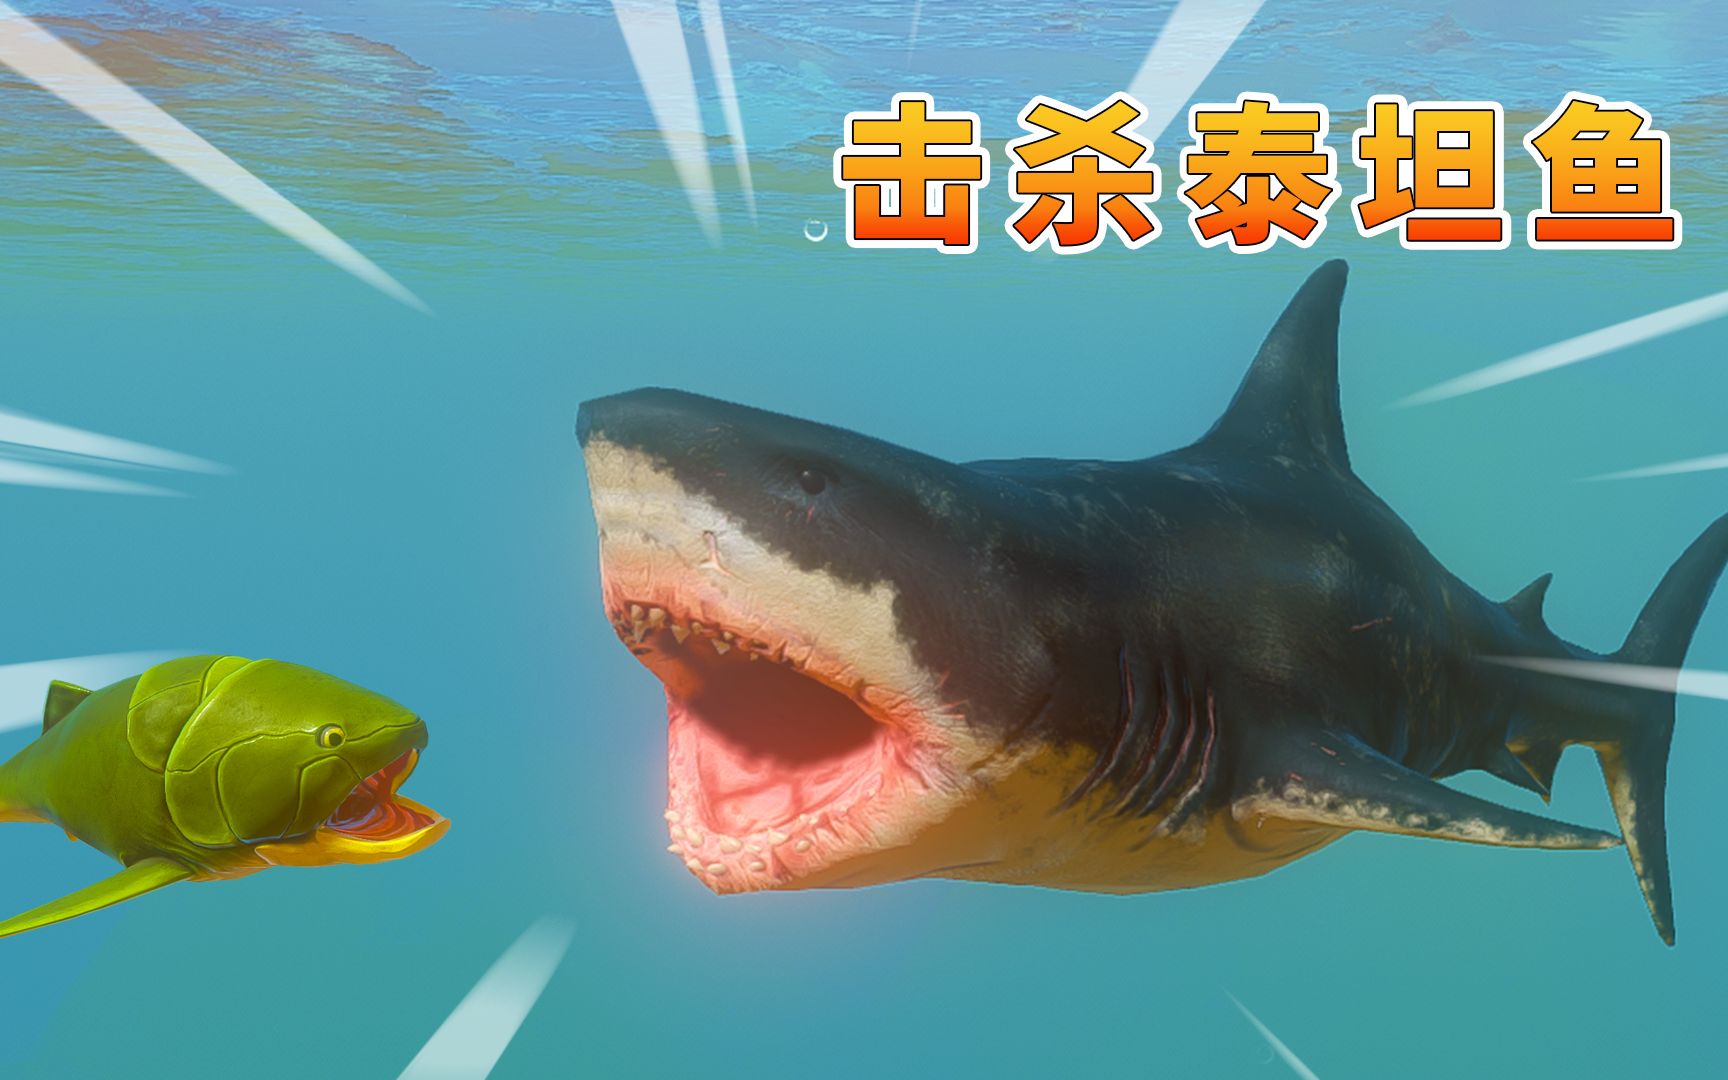 海底大猎杀127:图南变身大白鲨,成功击败泰坦鱼